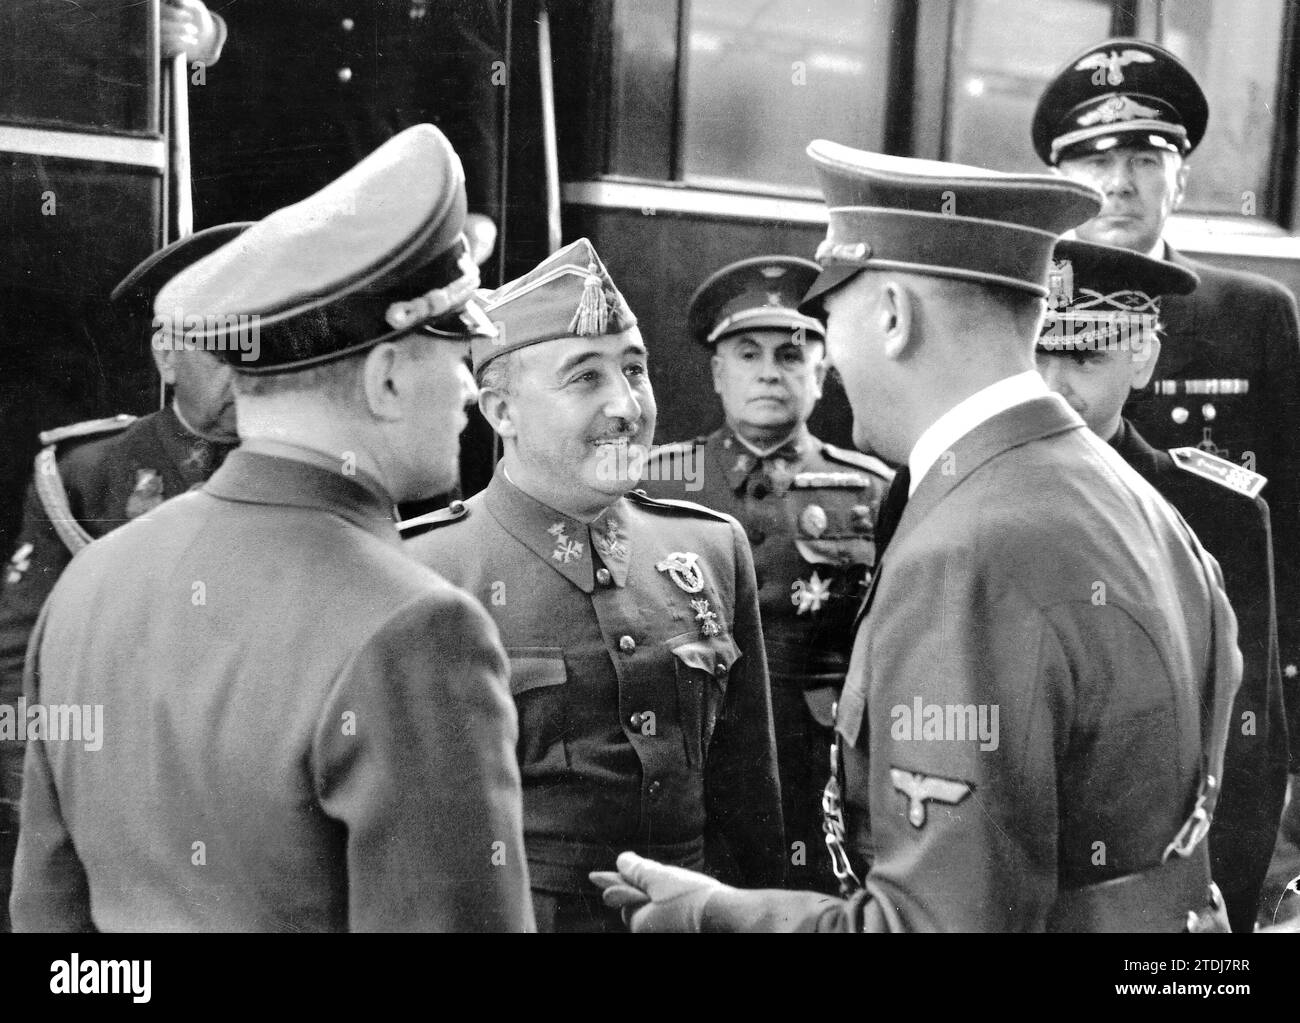 23.10.1940.- erste Begrüßung zwischen Franco und Hitler in ihrem Interview in Hendaye, als der Spanier in den französischen Ländern ankam. Quelle: Album / Archivo ABC / Ilustrus Stockfoto